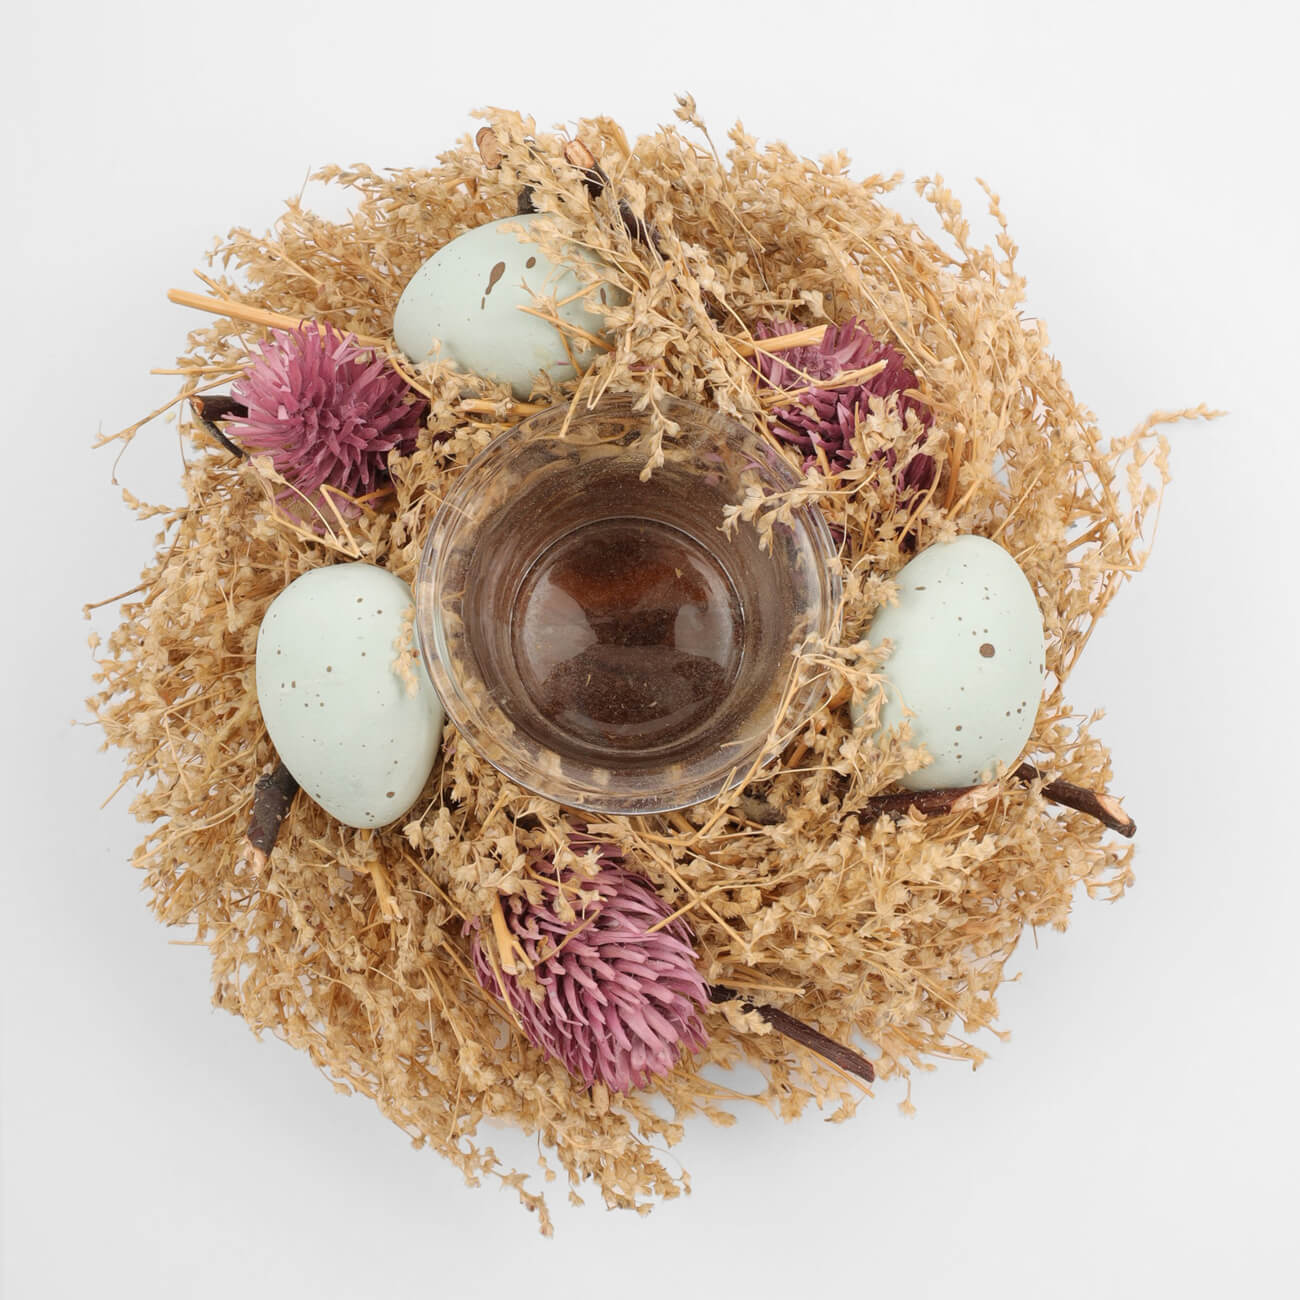 подставка для яйца 6 см на ножке стекло р перламутр кайма easter Подсвечник, 18 см, для чайной свечи, стекло/сухоцветы, Полевой венок, Natural Easter decor